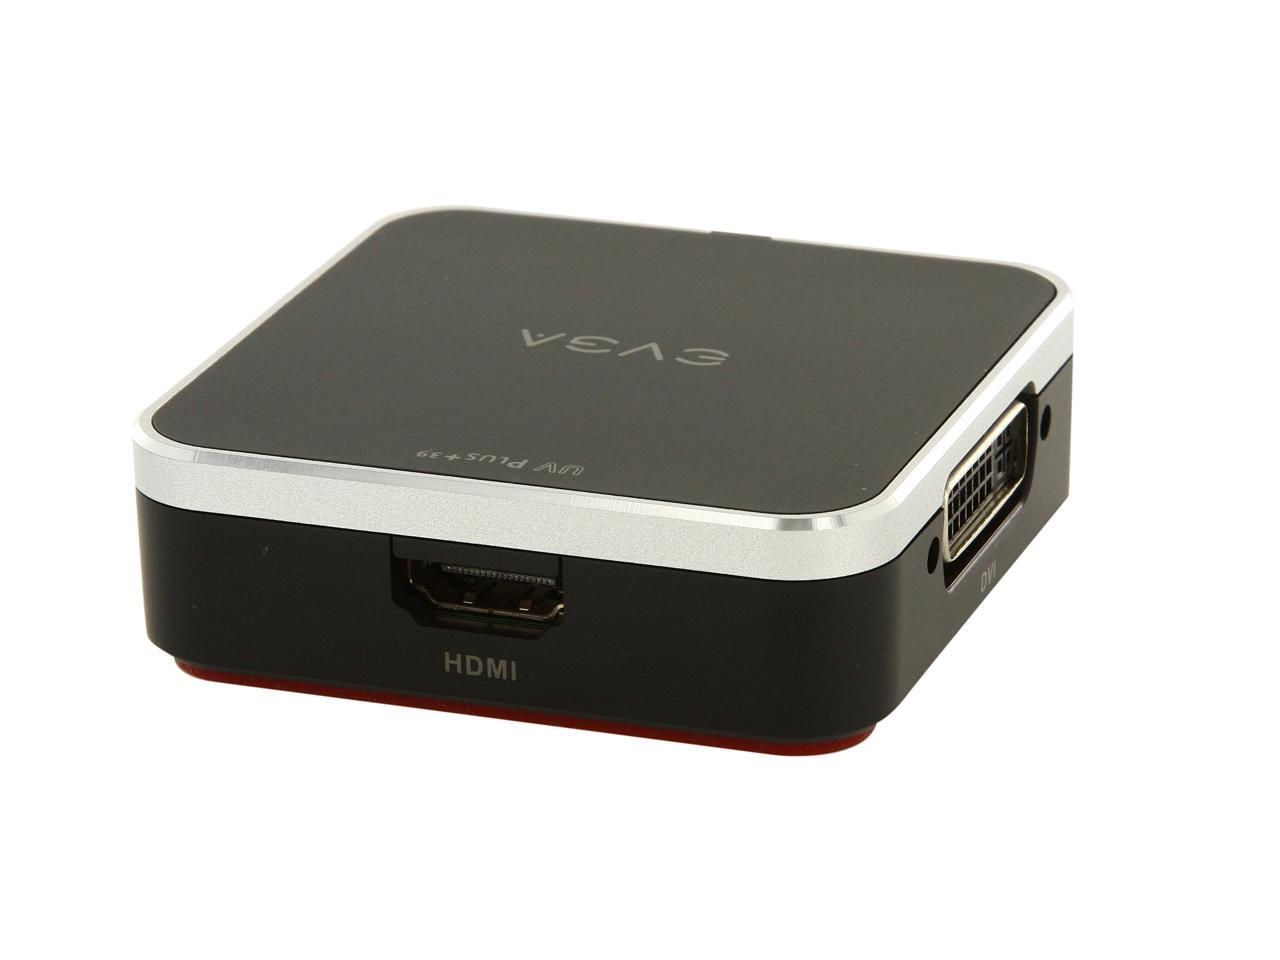 100-U3-UV39-KR 39 USB VGA DVI/HDMI/USB3.0/Supporting 1920x1200 or 2048x1152 Resolutions EVGA UVPlus